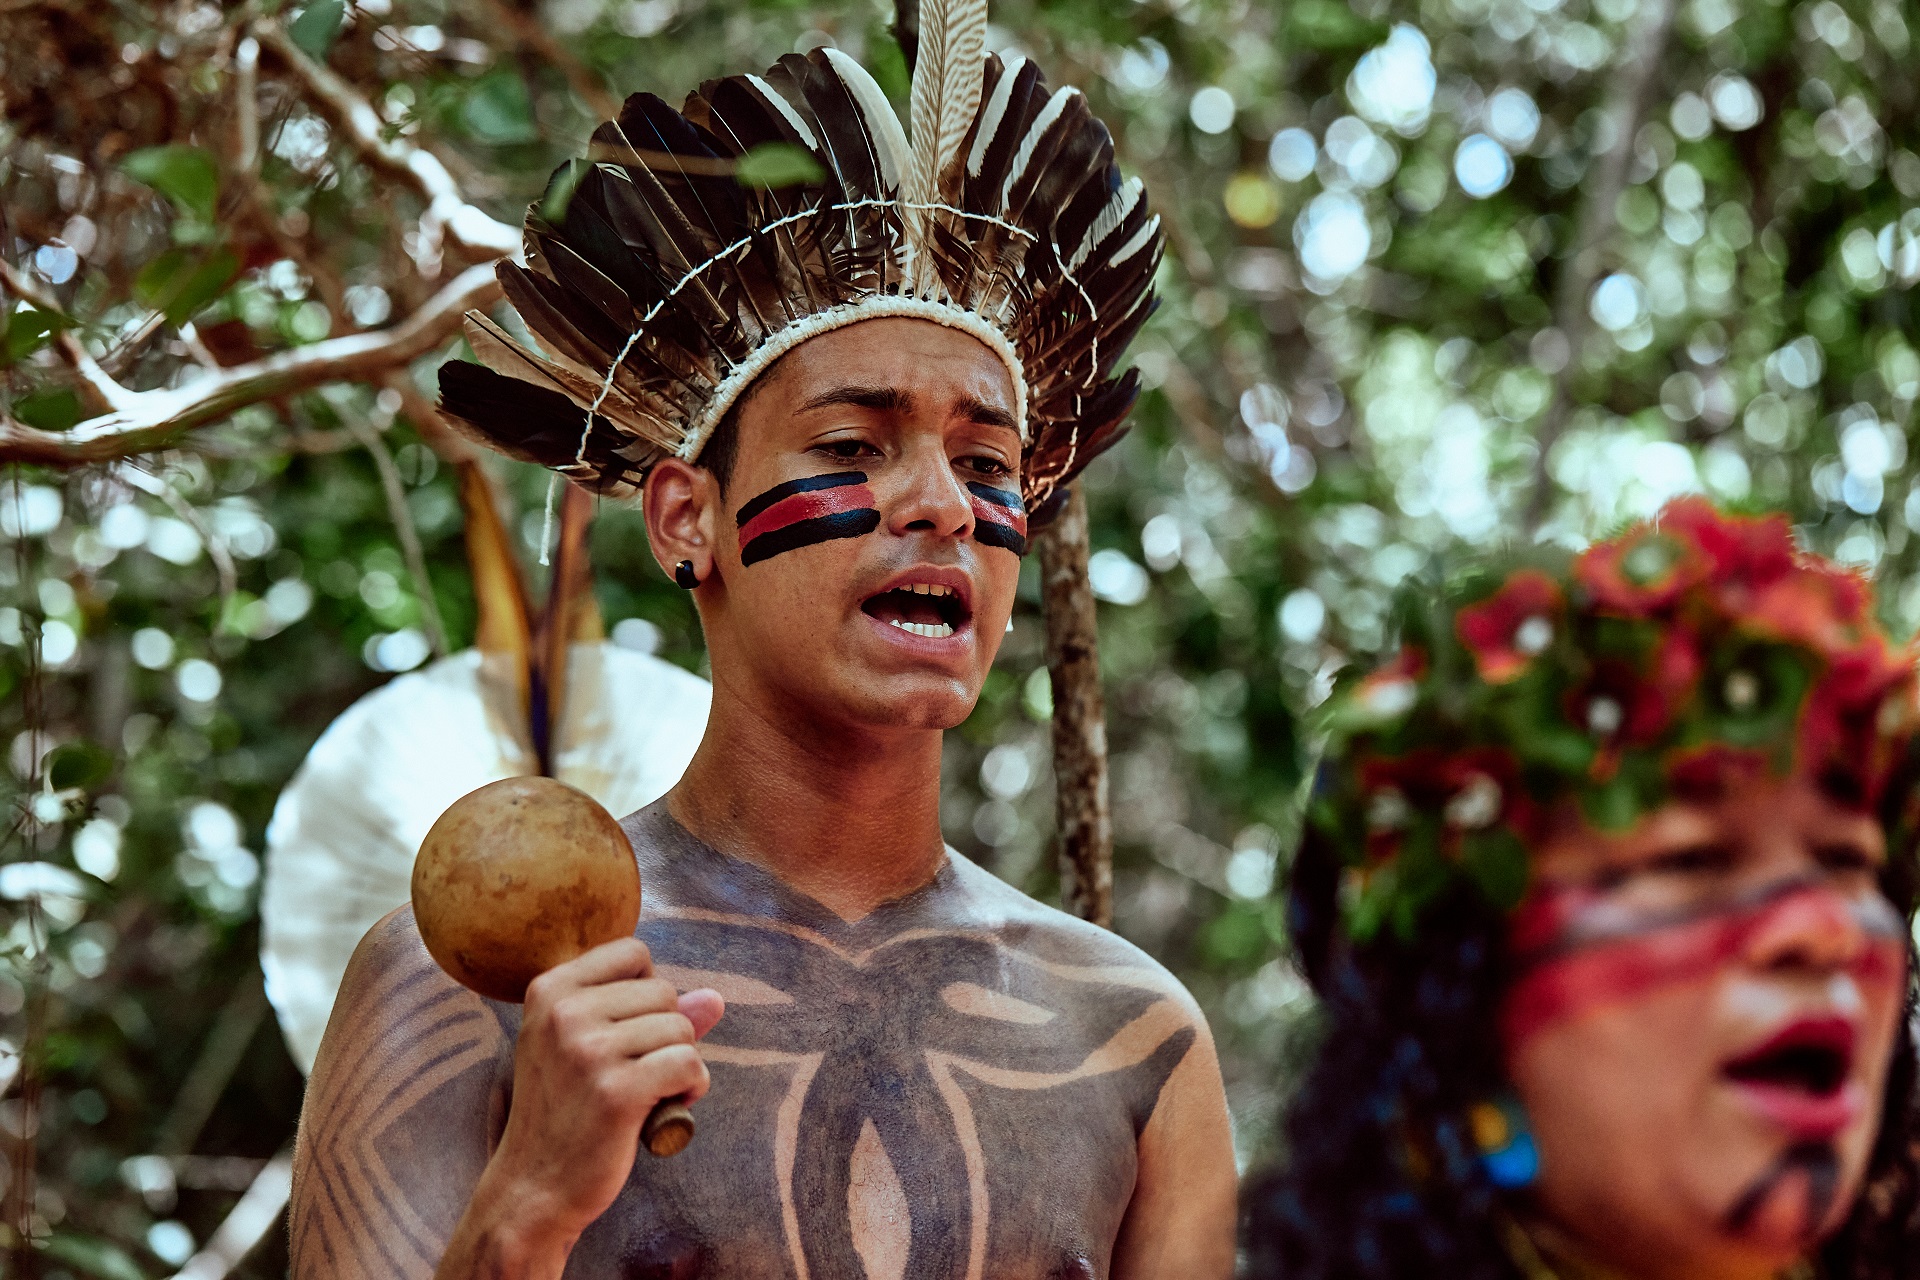 Projeto “Educação na Praça” promove roda de conversa sobre povos indígenas no Brasil Contemporâneo